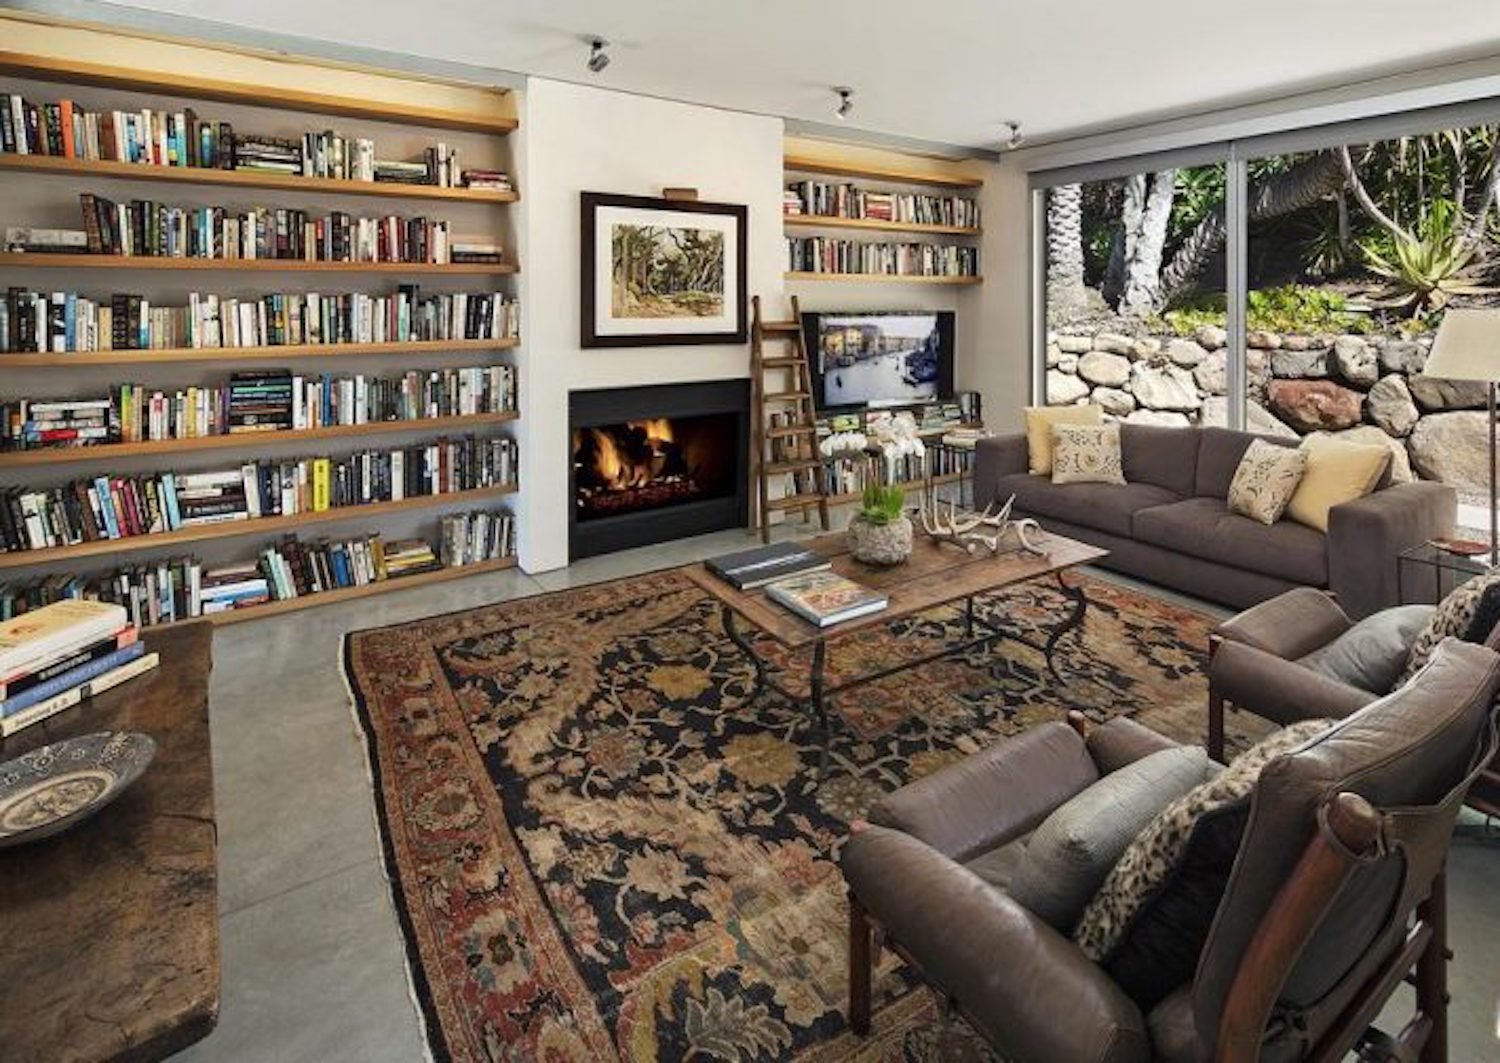 Casa de la actriz Natalie Portman en Montecito sala de estar y biblioteca